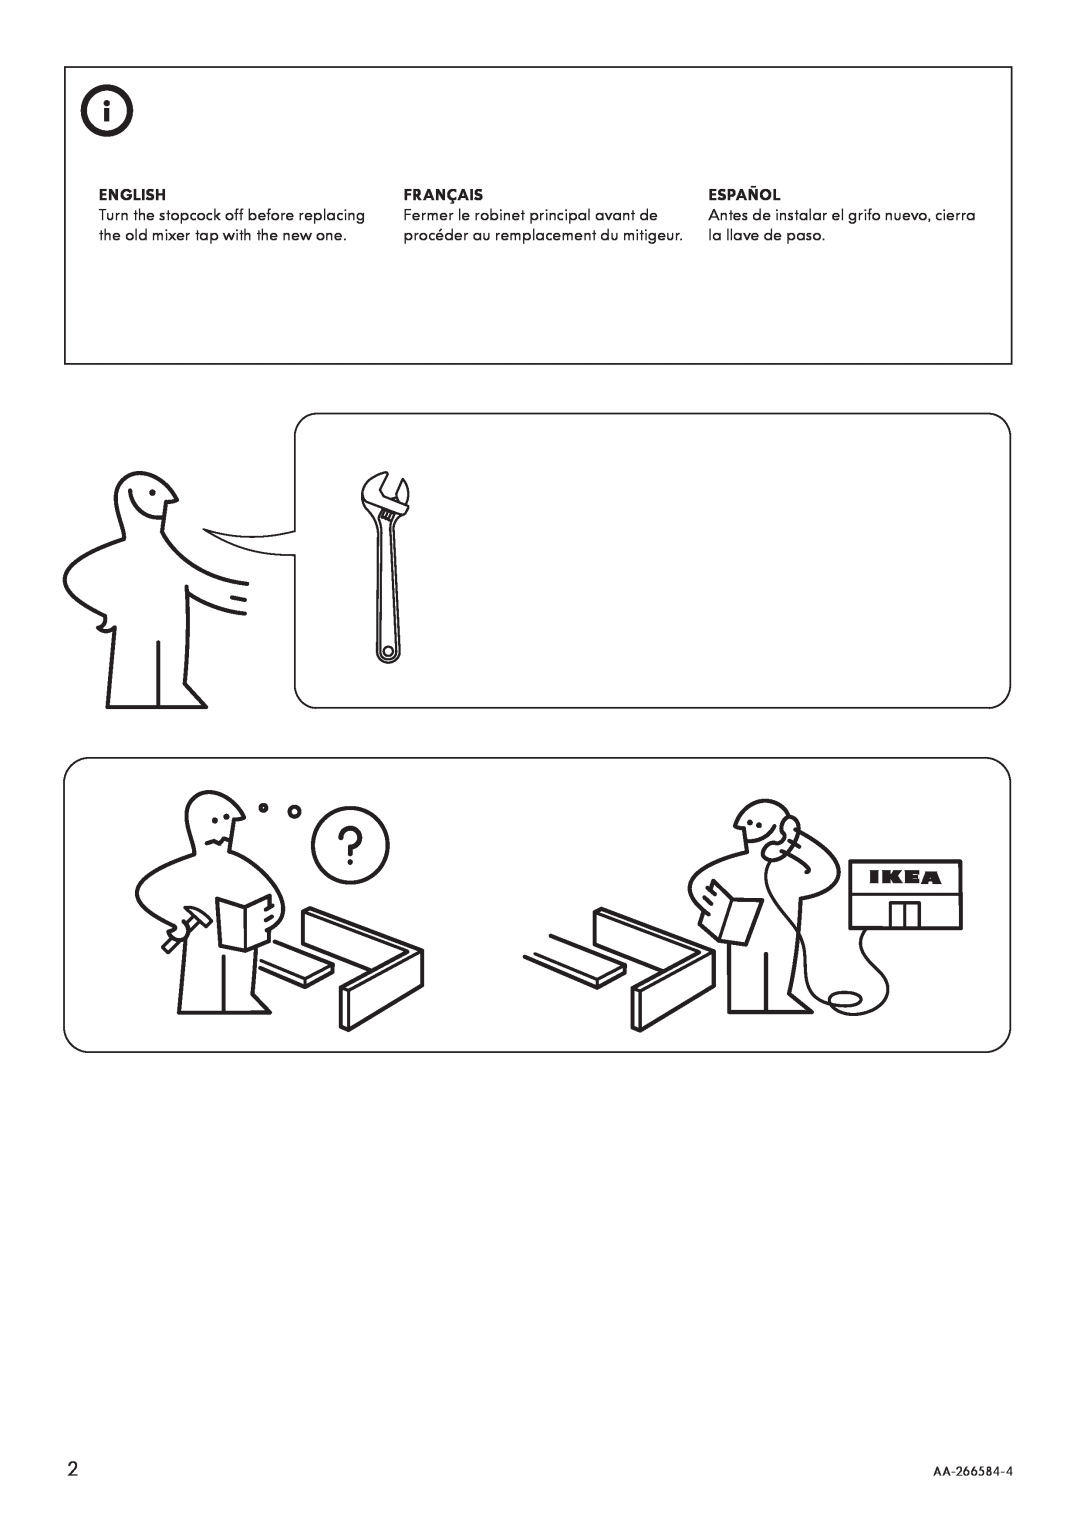 IKEA AA-266584-4 English, Français, Español, Fermer le robinet principal avant de, procéder au remplacement du mitigeur 